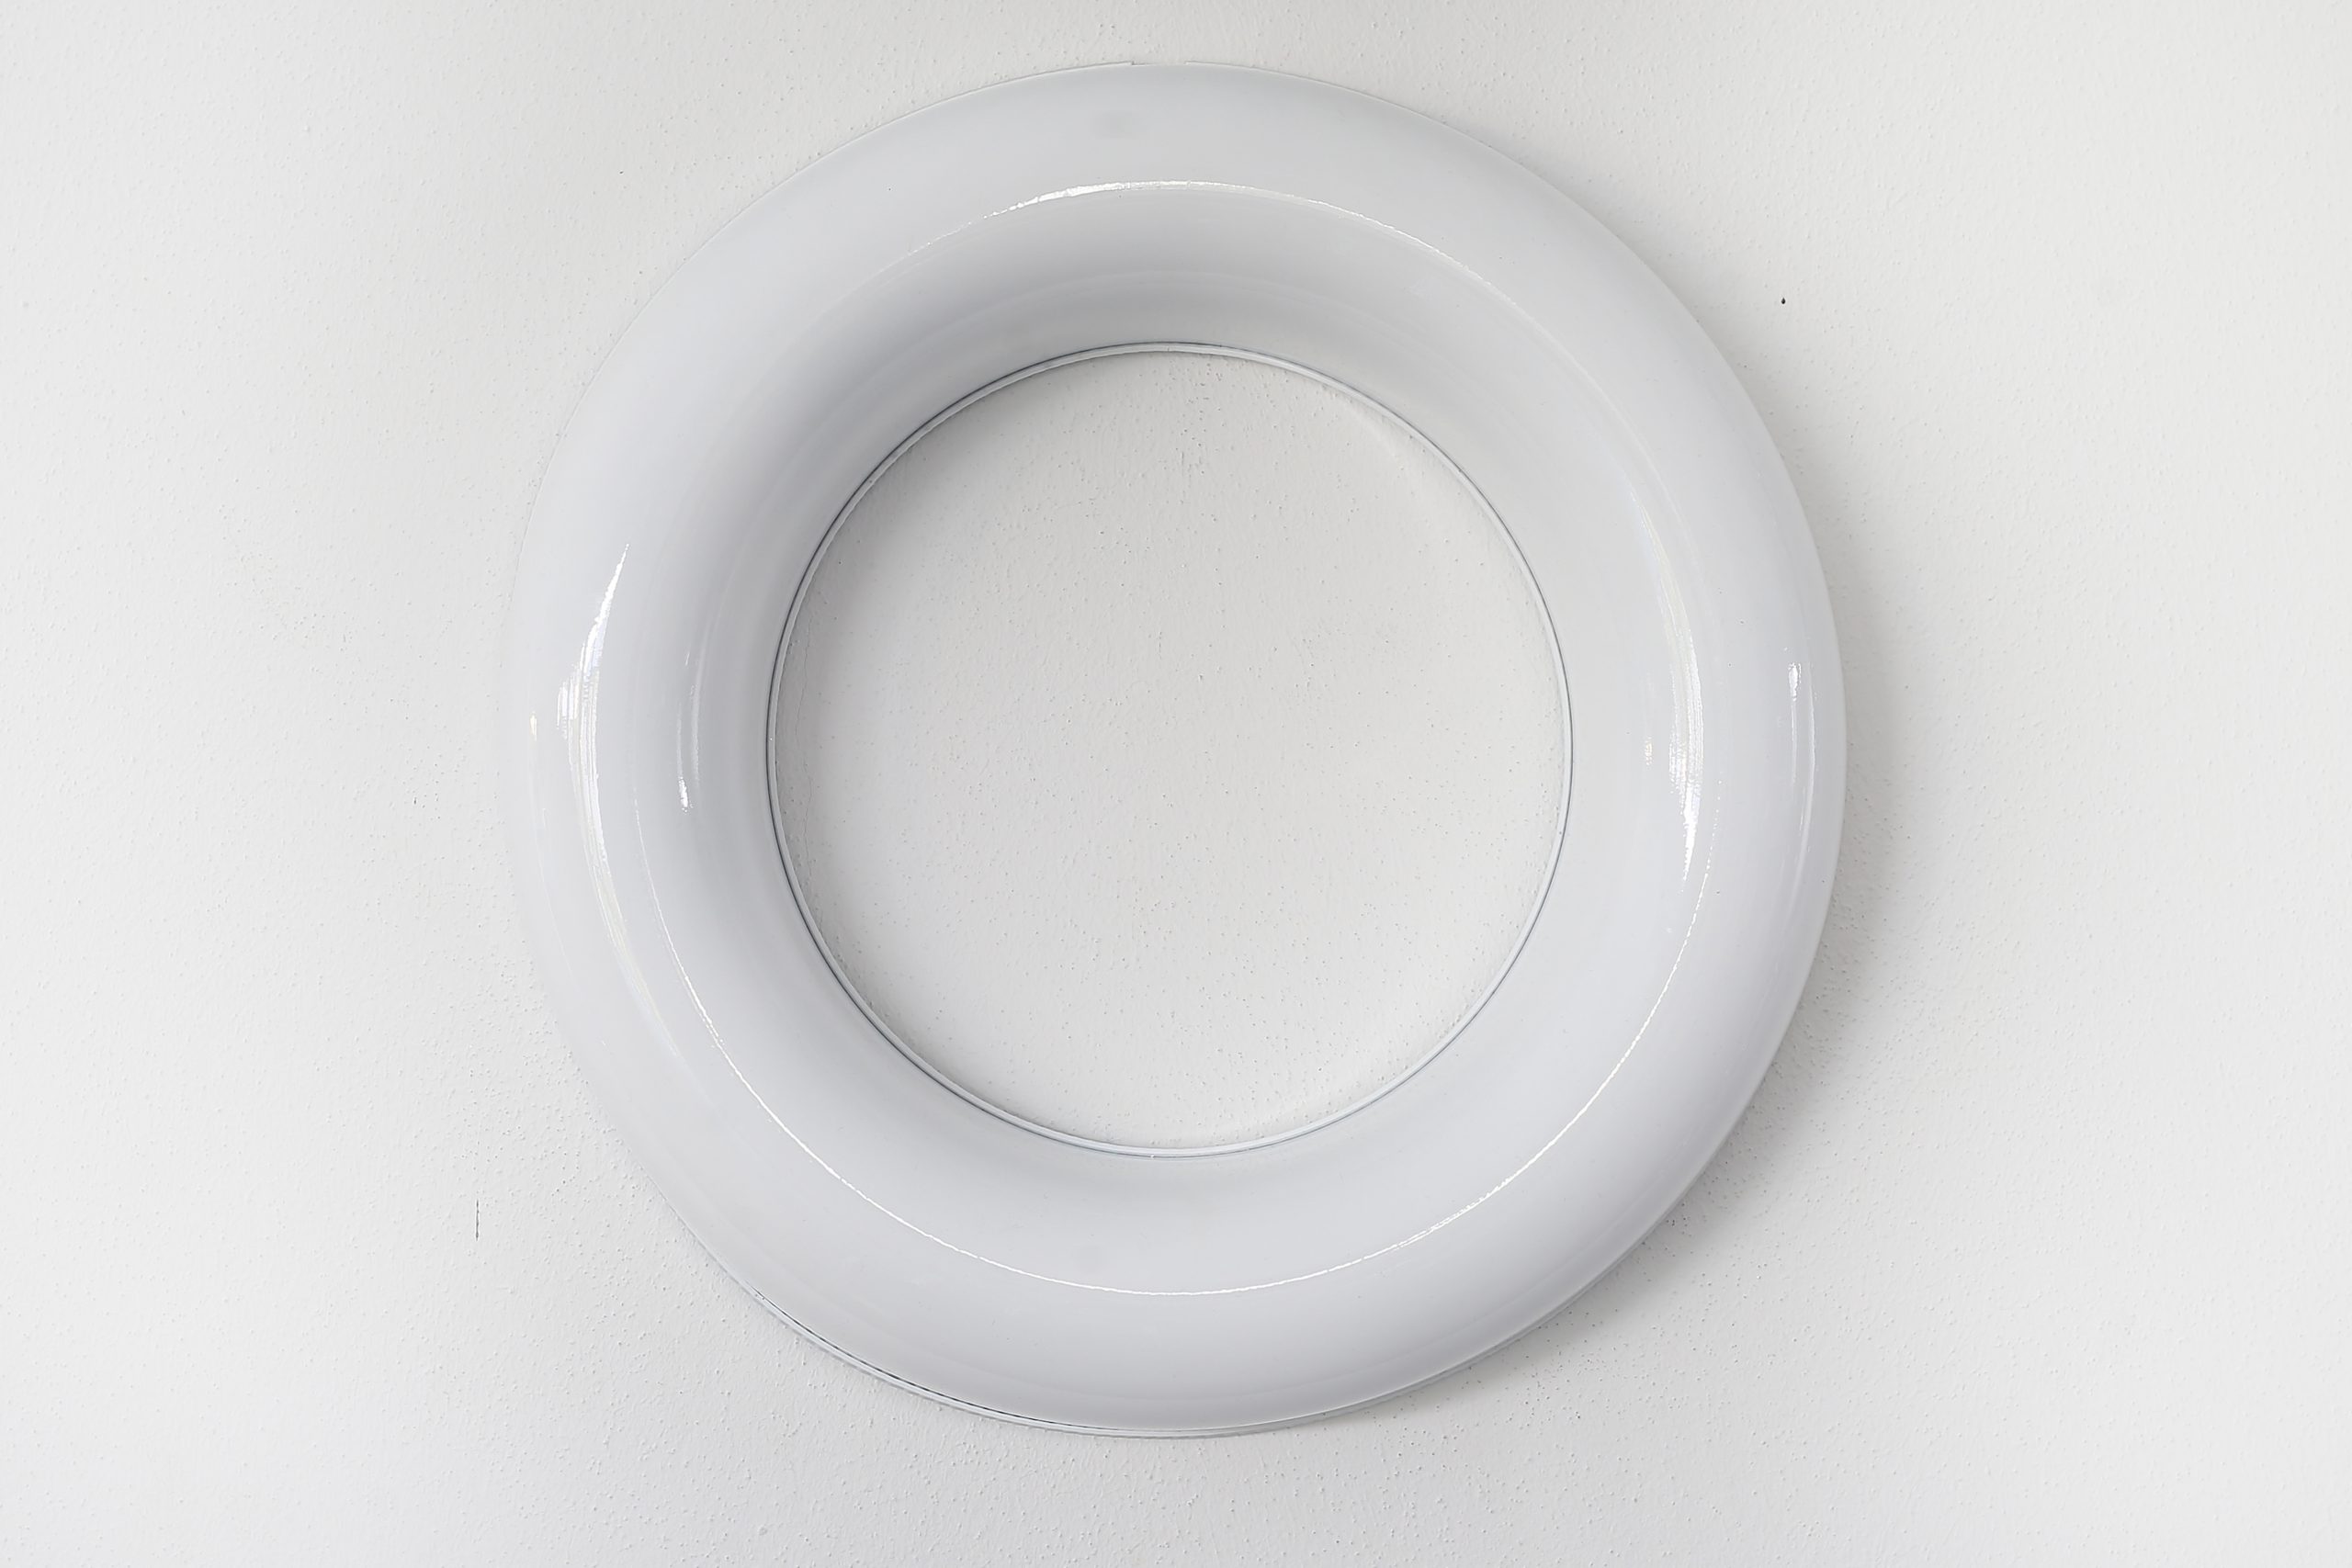 Festschmuck by Magneticas Designkranz Weiß lackiert, Durchmesser 40 cm (1-tlg.)